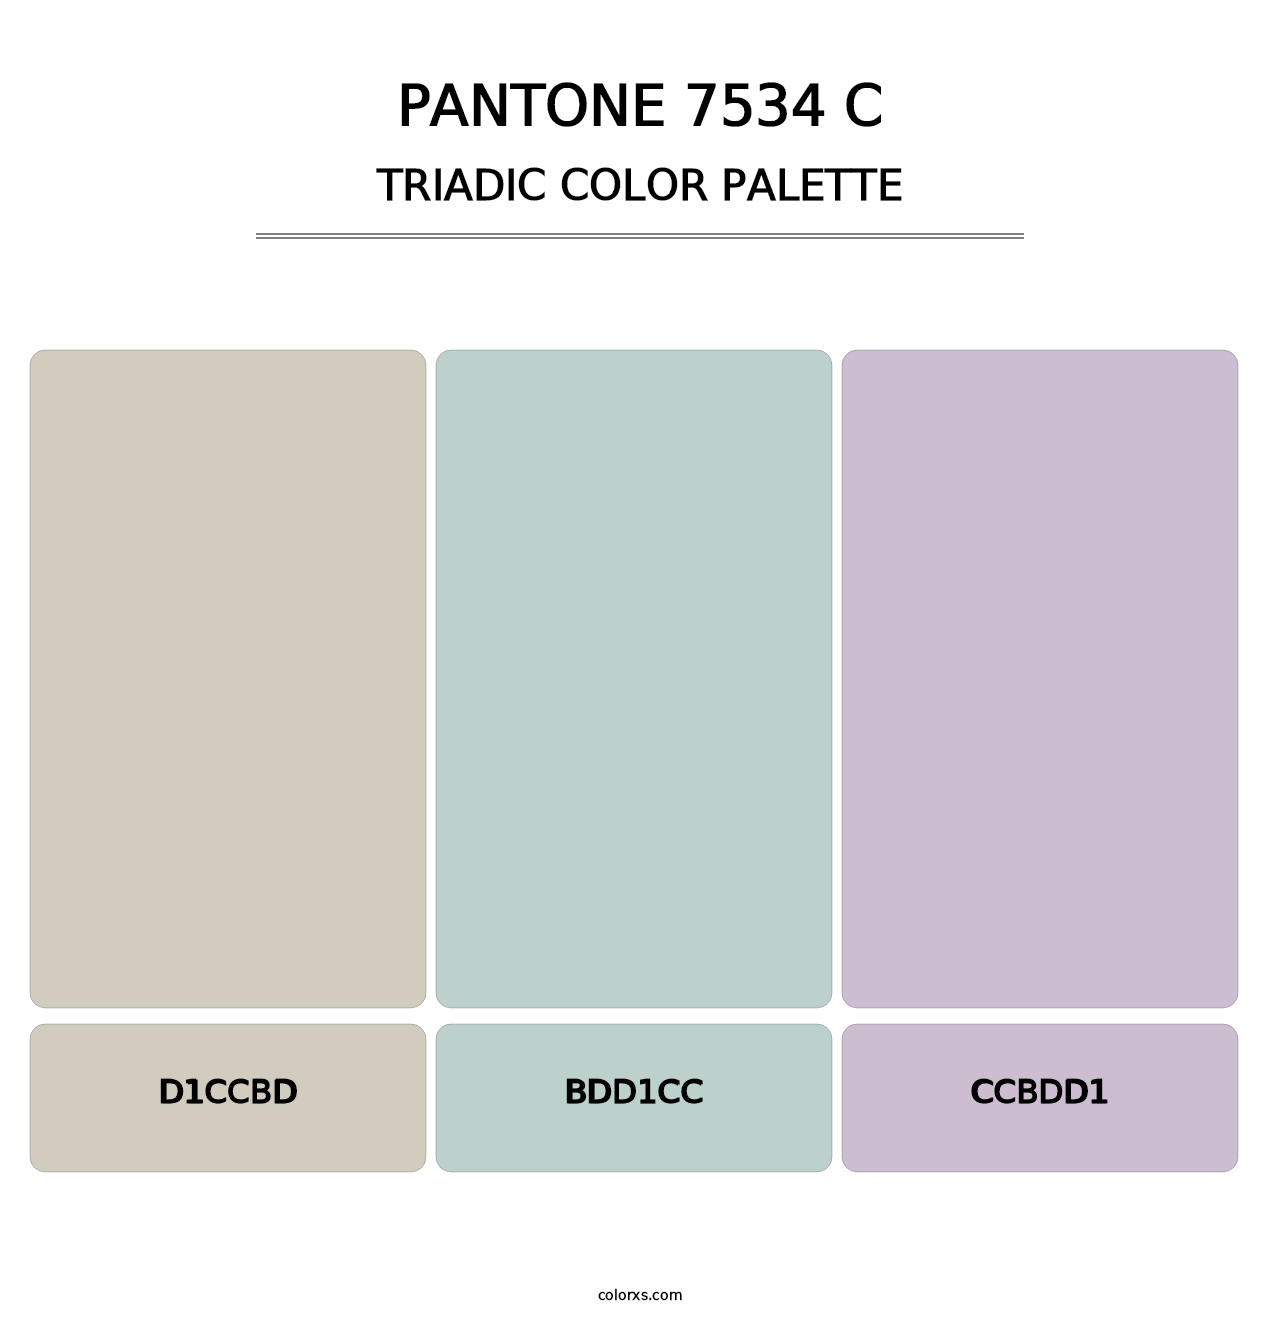 PANTONE 7534 C - Triadic Color Palette